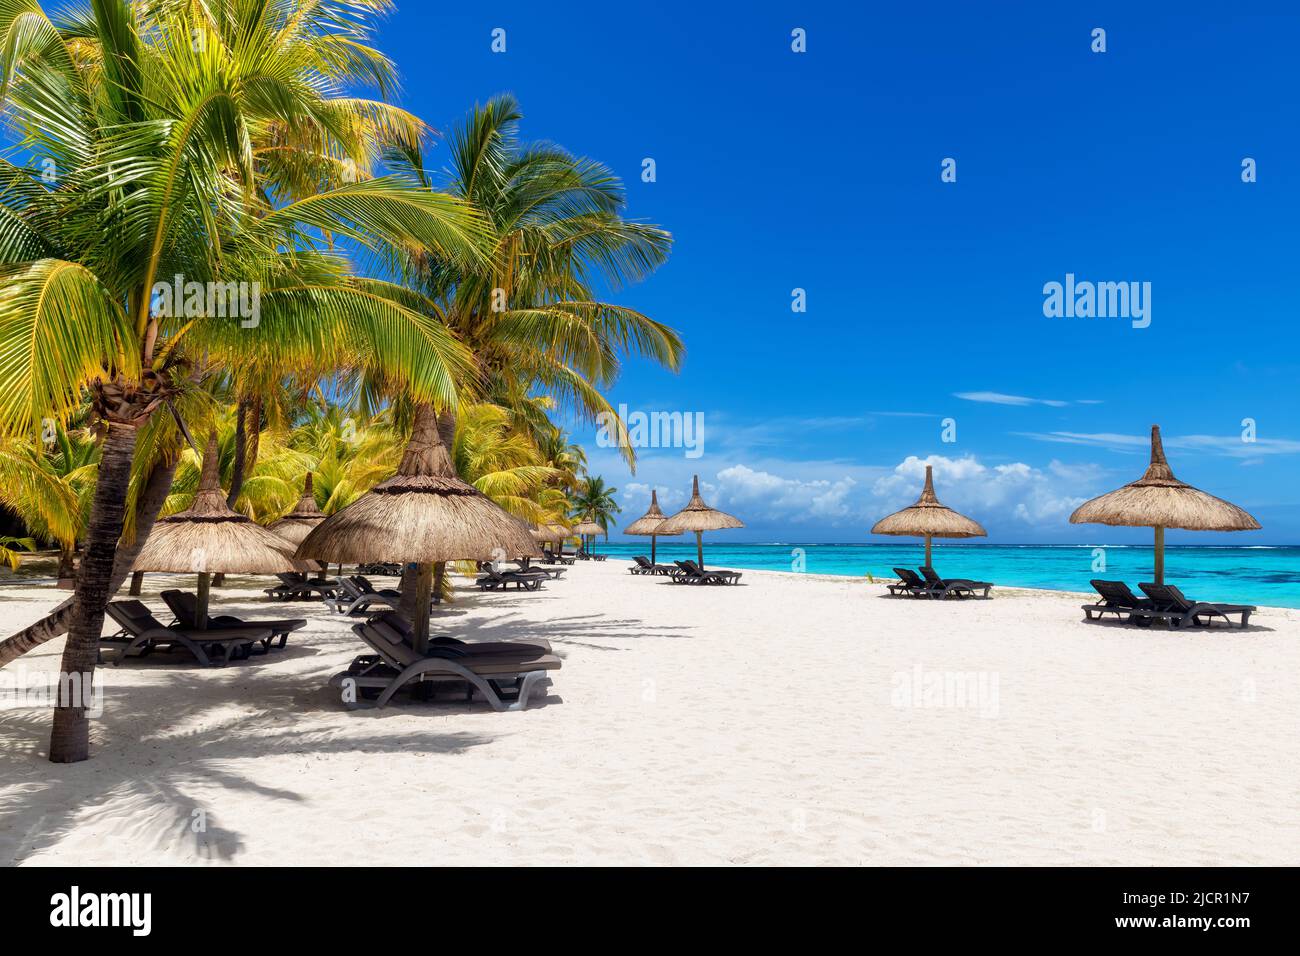 Hermosa playa con palmeras y sombrillas de paja en un complejo tropical en la isla Paradise. Foto de stock